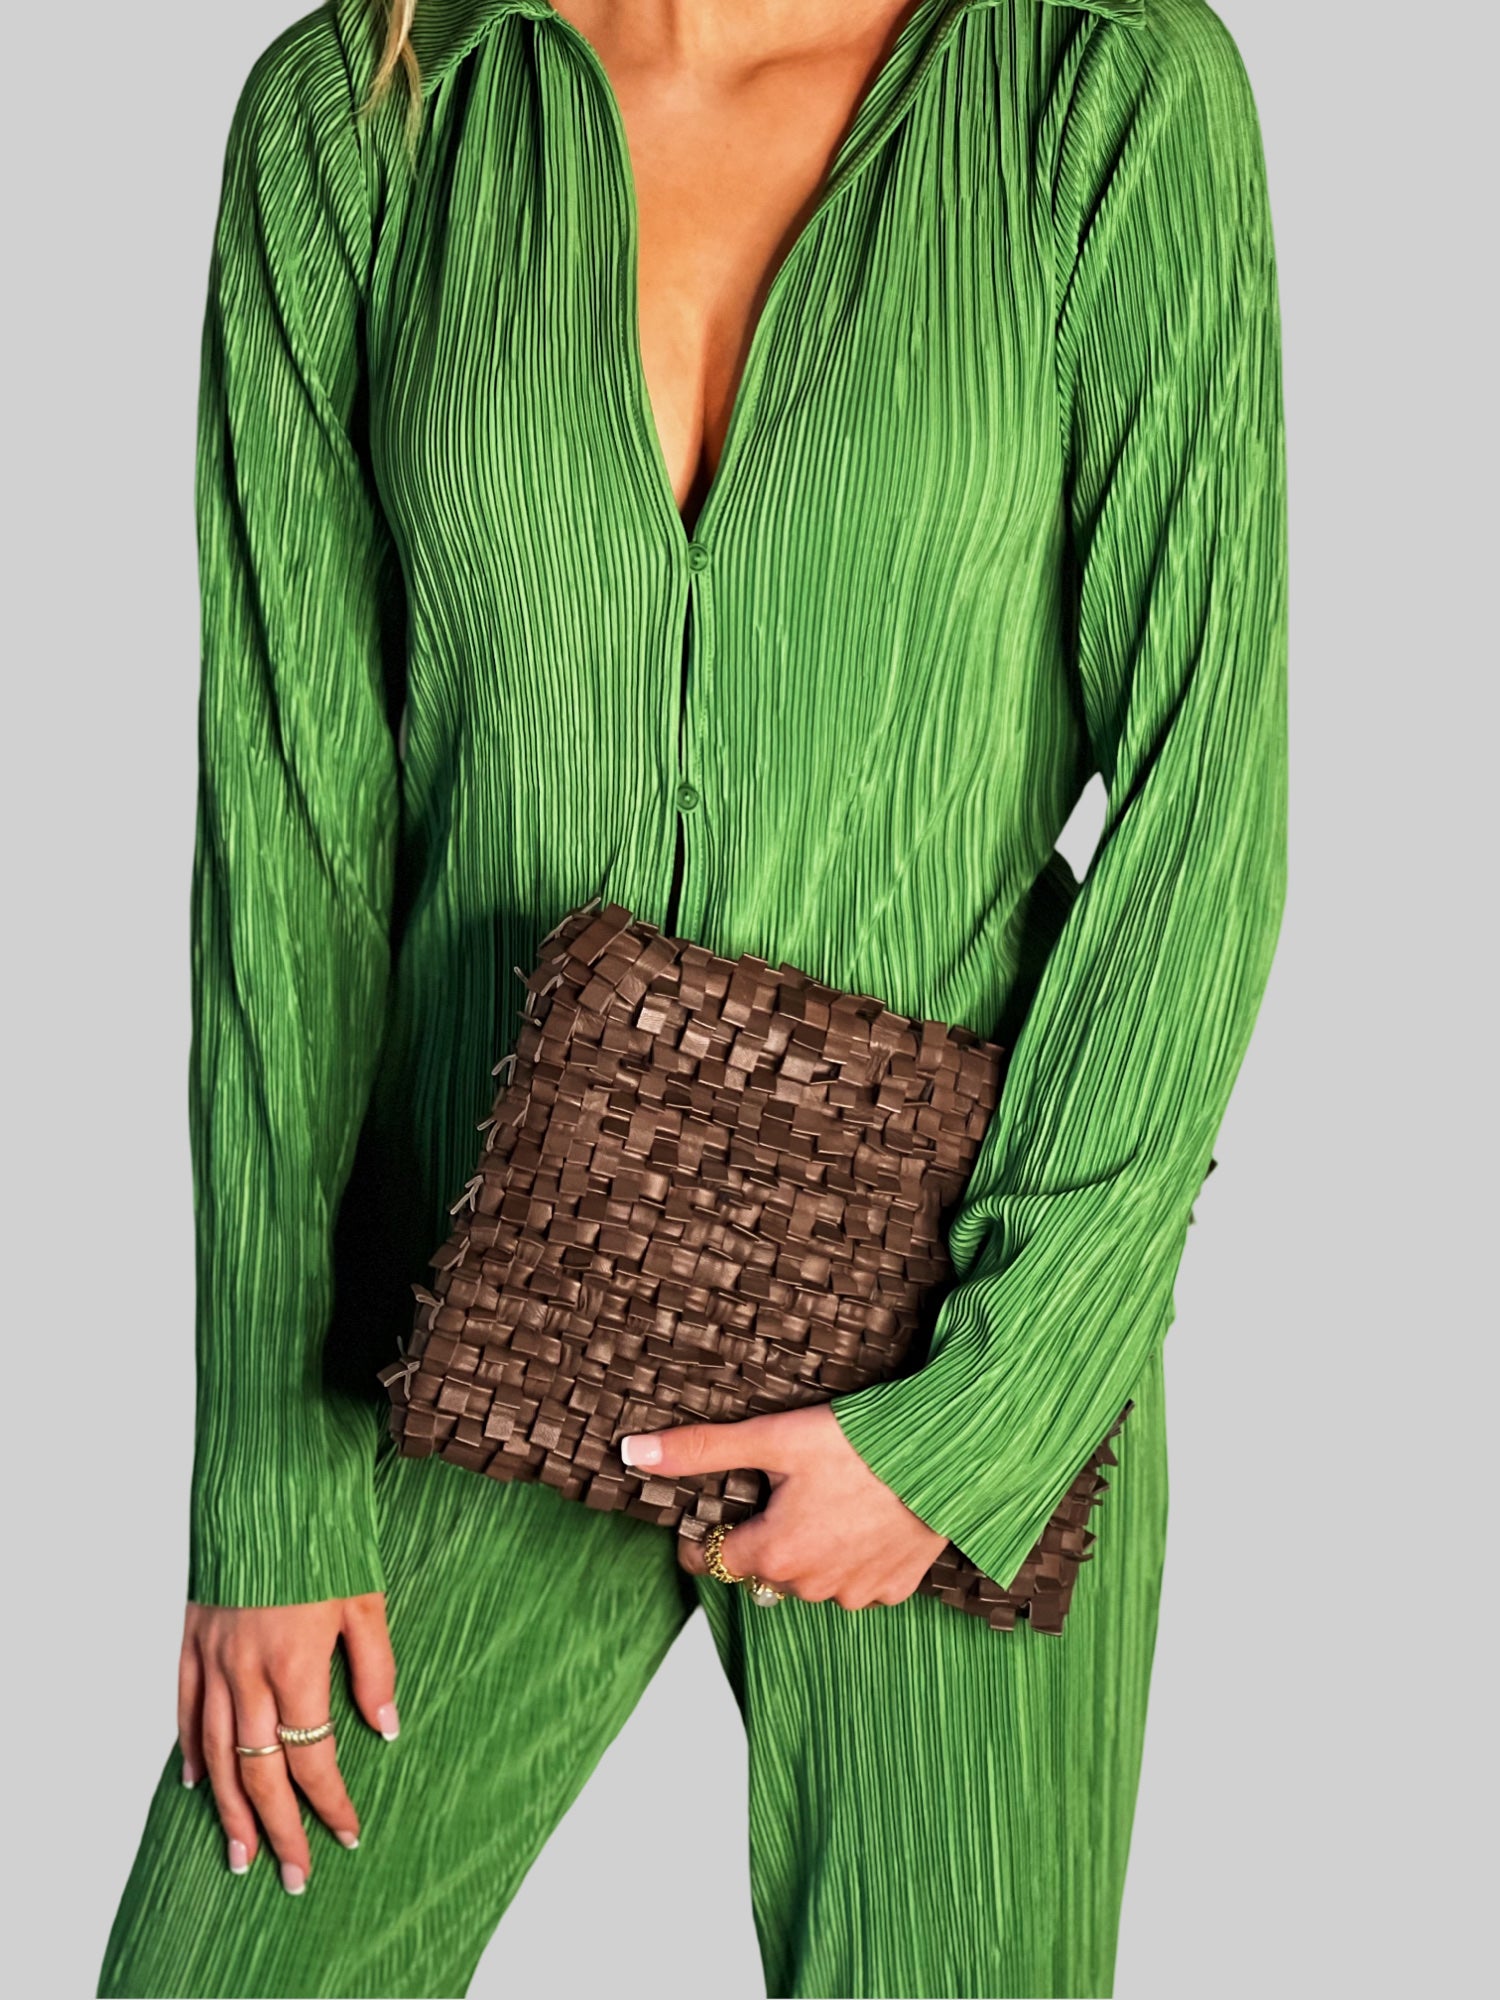 Kvinne i limegrønt antrekk bærer stolt en Ribichini Loren Clutch i brunt, et elegant tilbehør som fremhever hennes friske stil. 